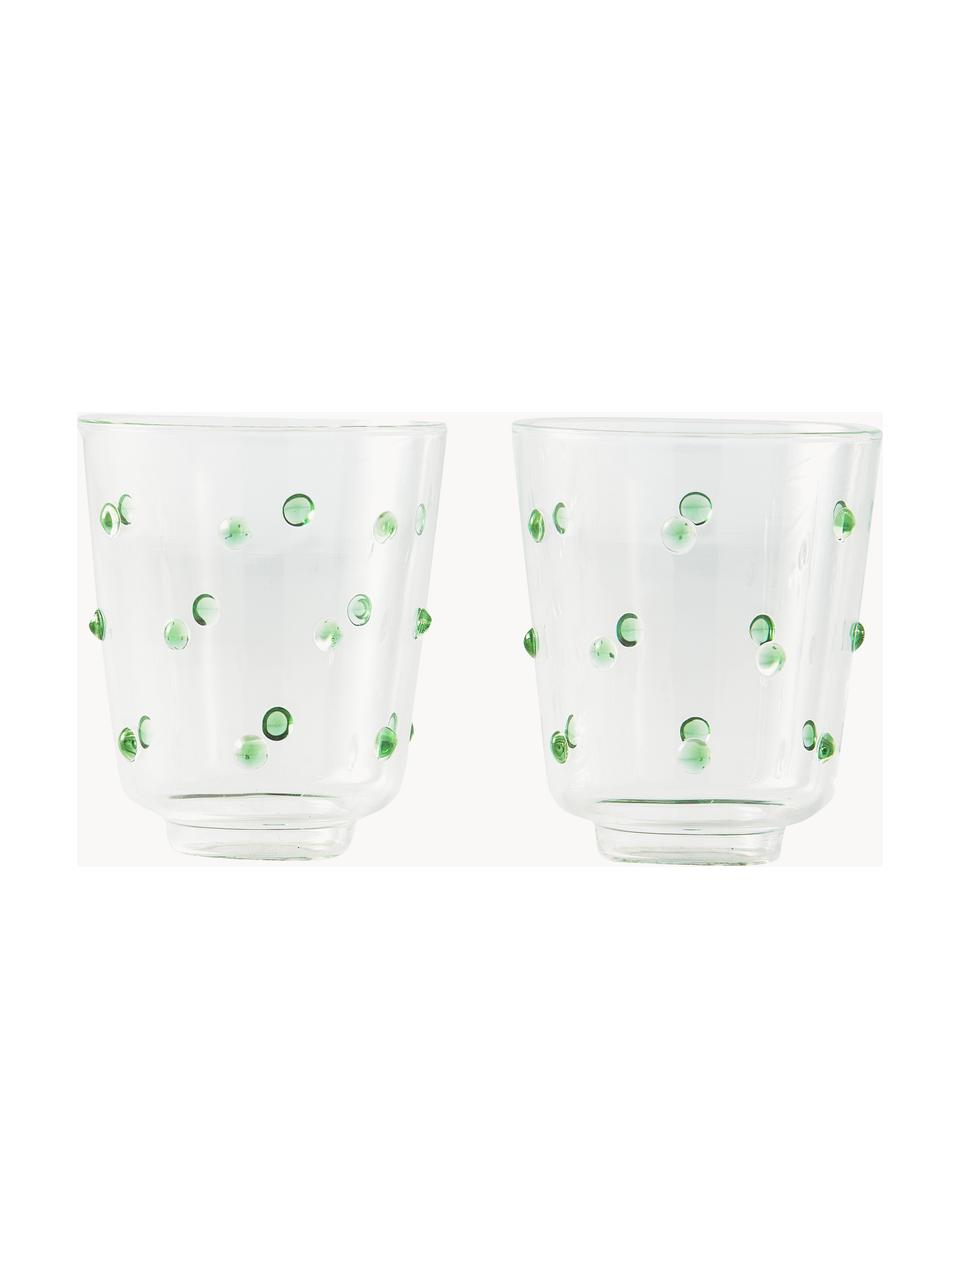 Ručně foukané sklenice na vodu z borosilikátového skla Nob, 2 ks, Borosilikátové sklo, ručně foukané, Transparentní, zelená, Ø 9 cm, V 10 cm, 300 ml